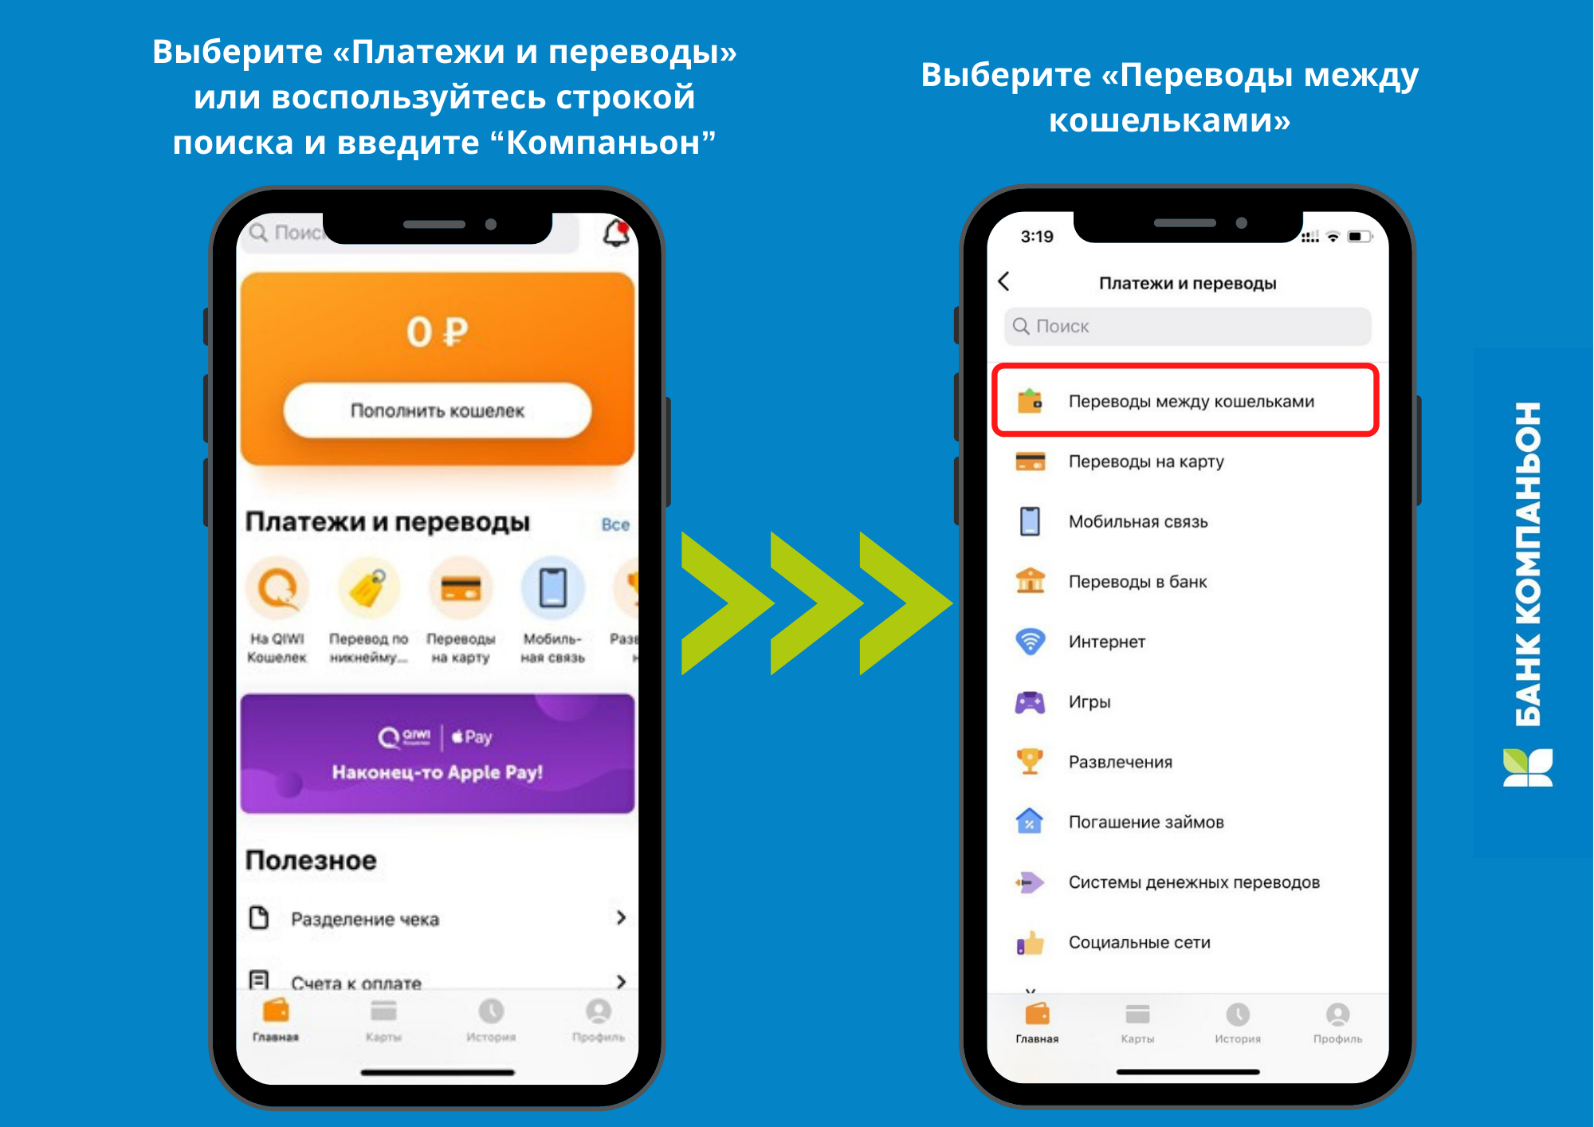 Как перевести деньги в казахстан из россии: обзор сервисов